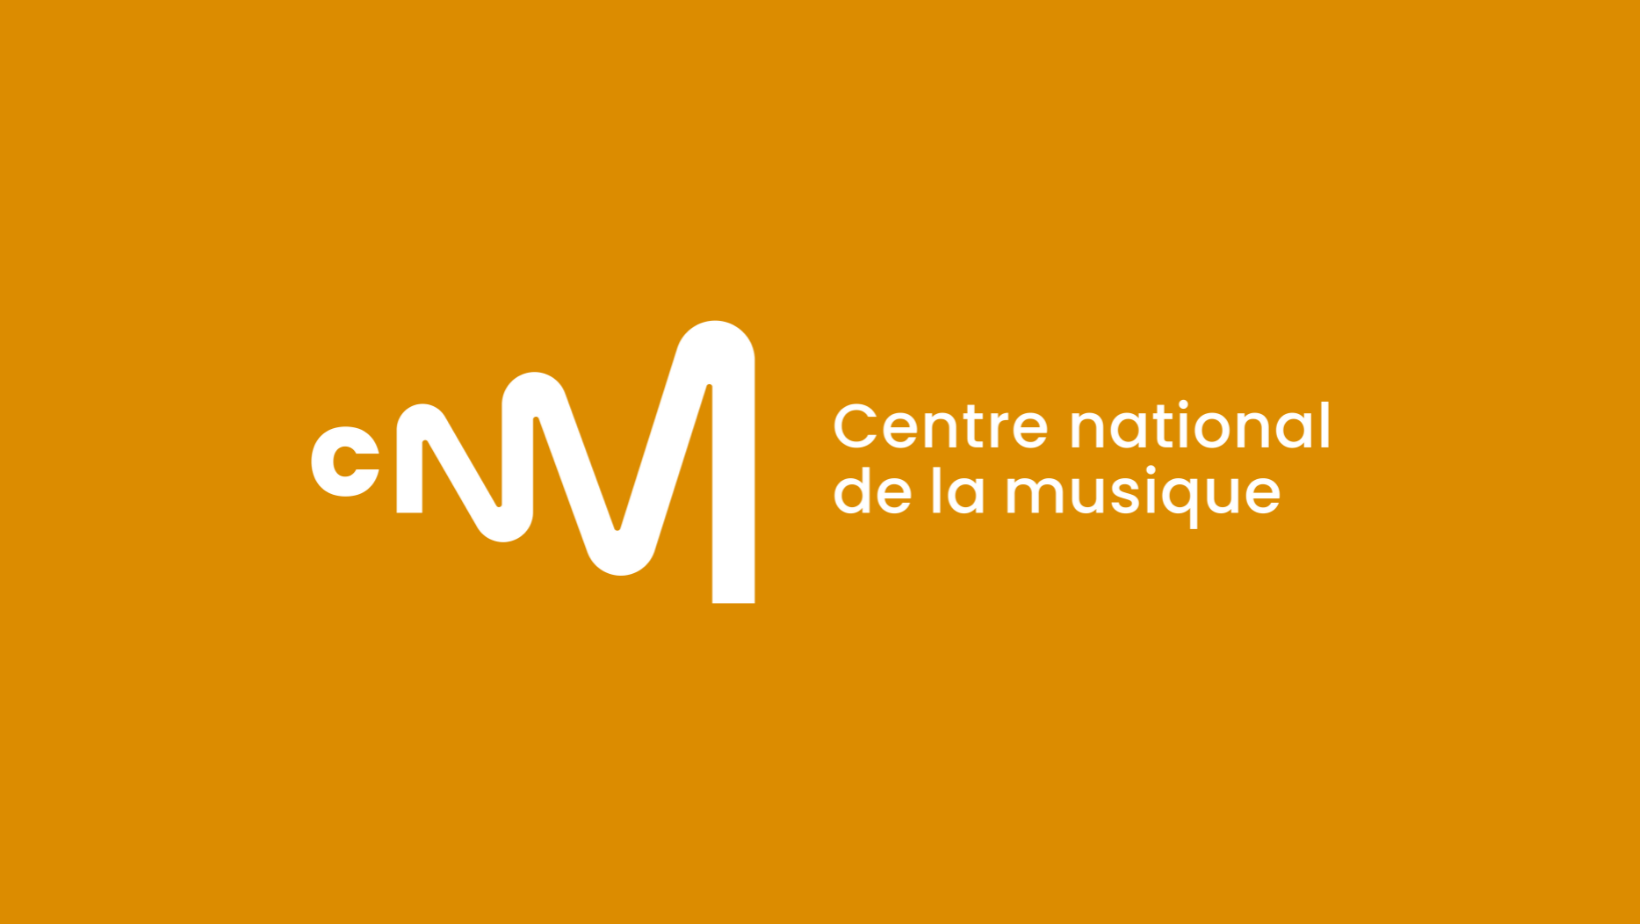 L’État, le ministère de la Culture, la direction des affaires culturelles de La Réunion, le Centre national de la musique et la région Réunion signent un deuxième Contrat de filière musiques actuelles visant à soutenir la filière régionale